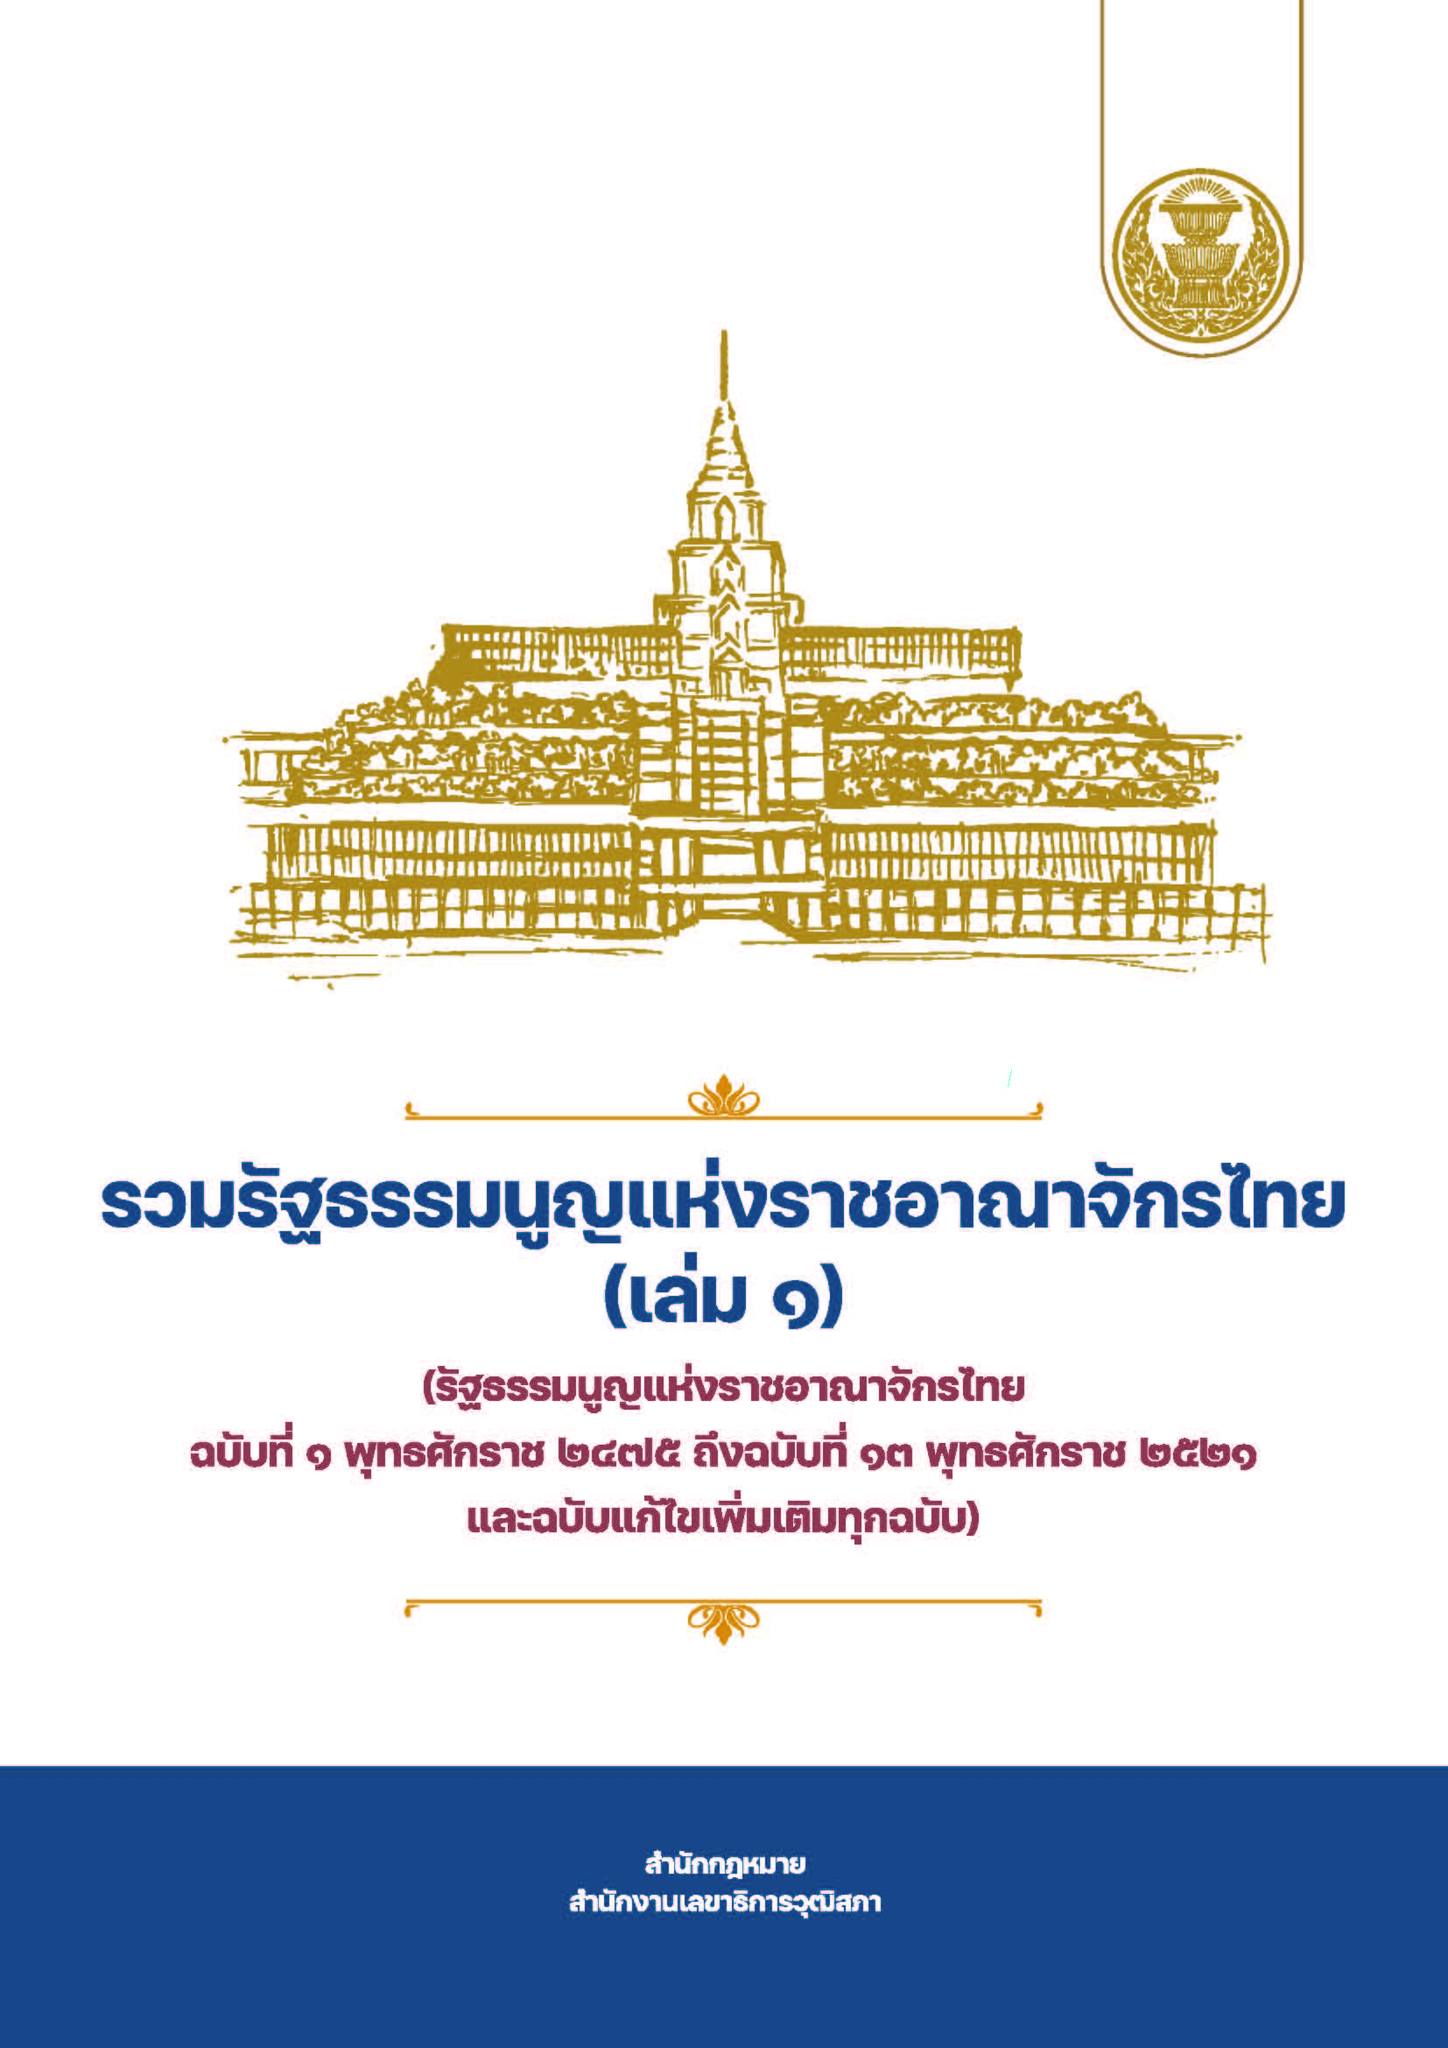 รวมรัฐธรรมนูญแห่งราชอาณาจักรไทย (เล่ม 1)